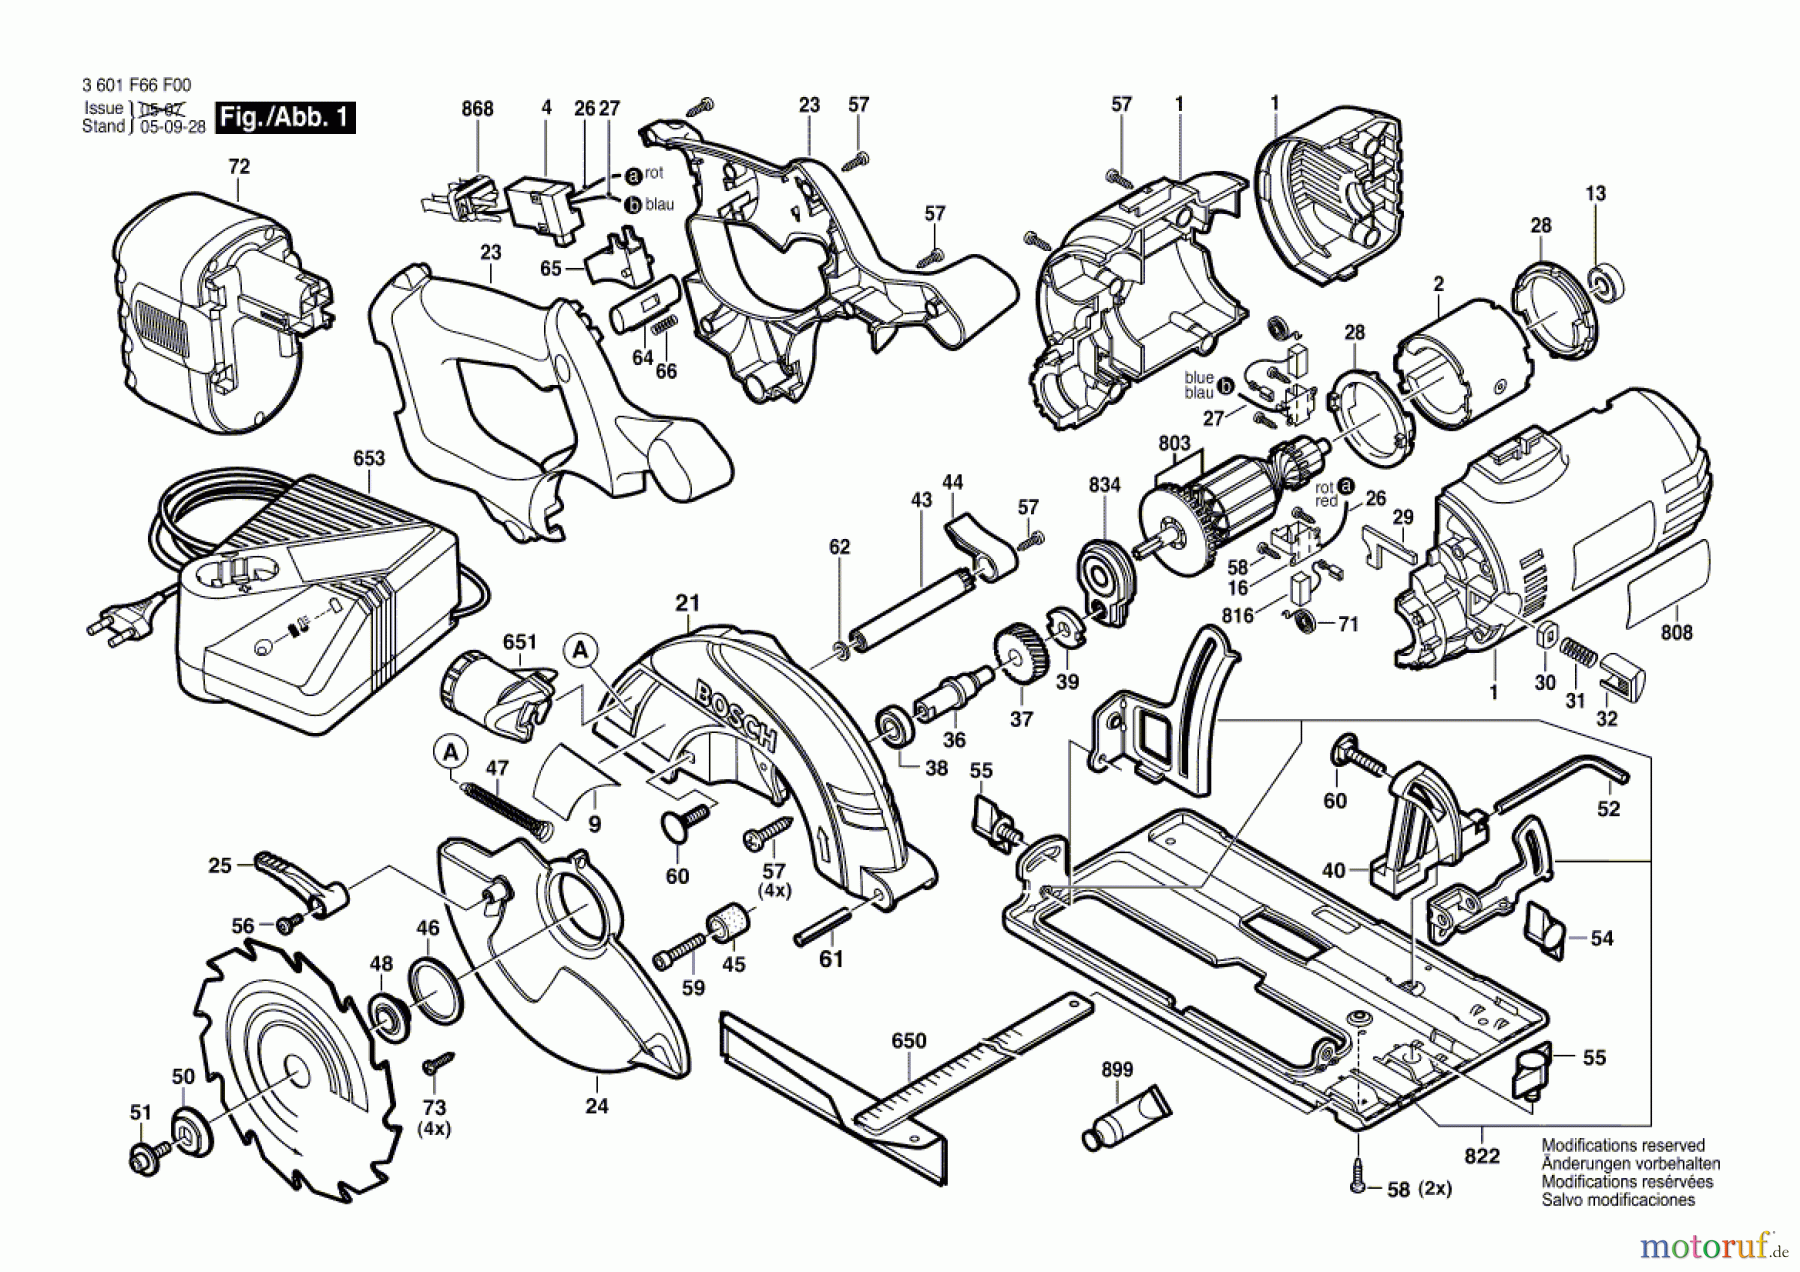  Bosch Akku Werkzeug Akku-Kreissäge GKS 18 V Seite 1